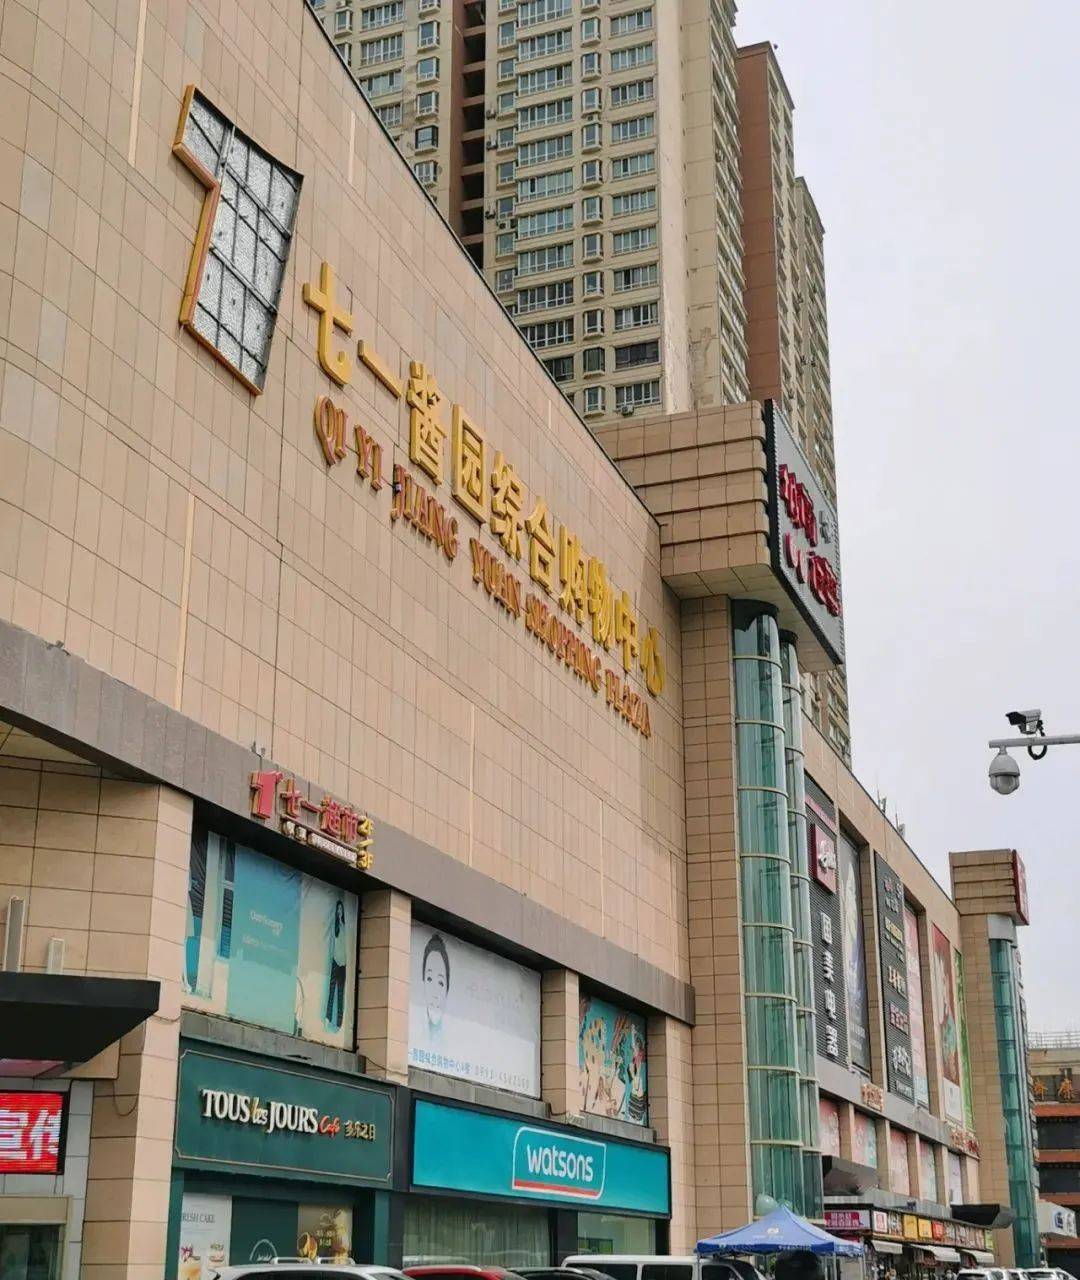 吐鲁番最大的购物中心图片